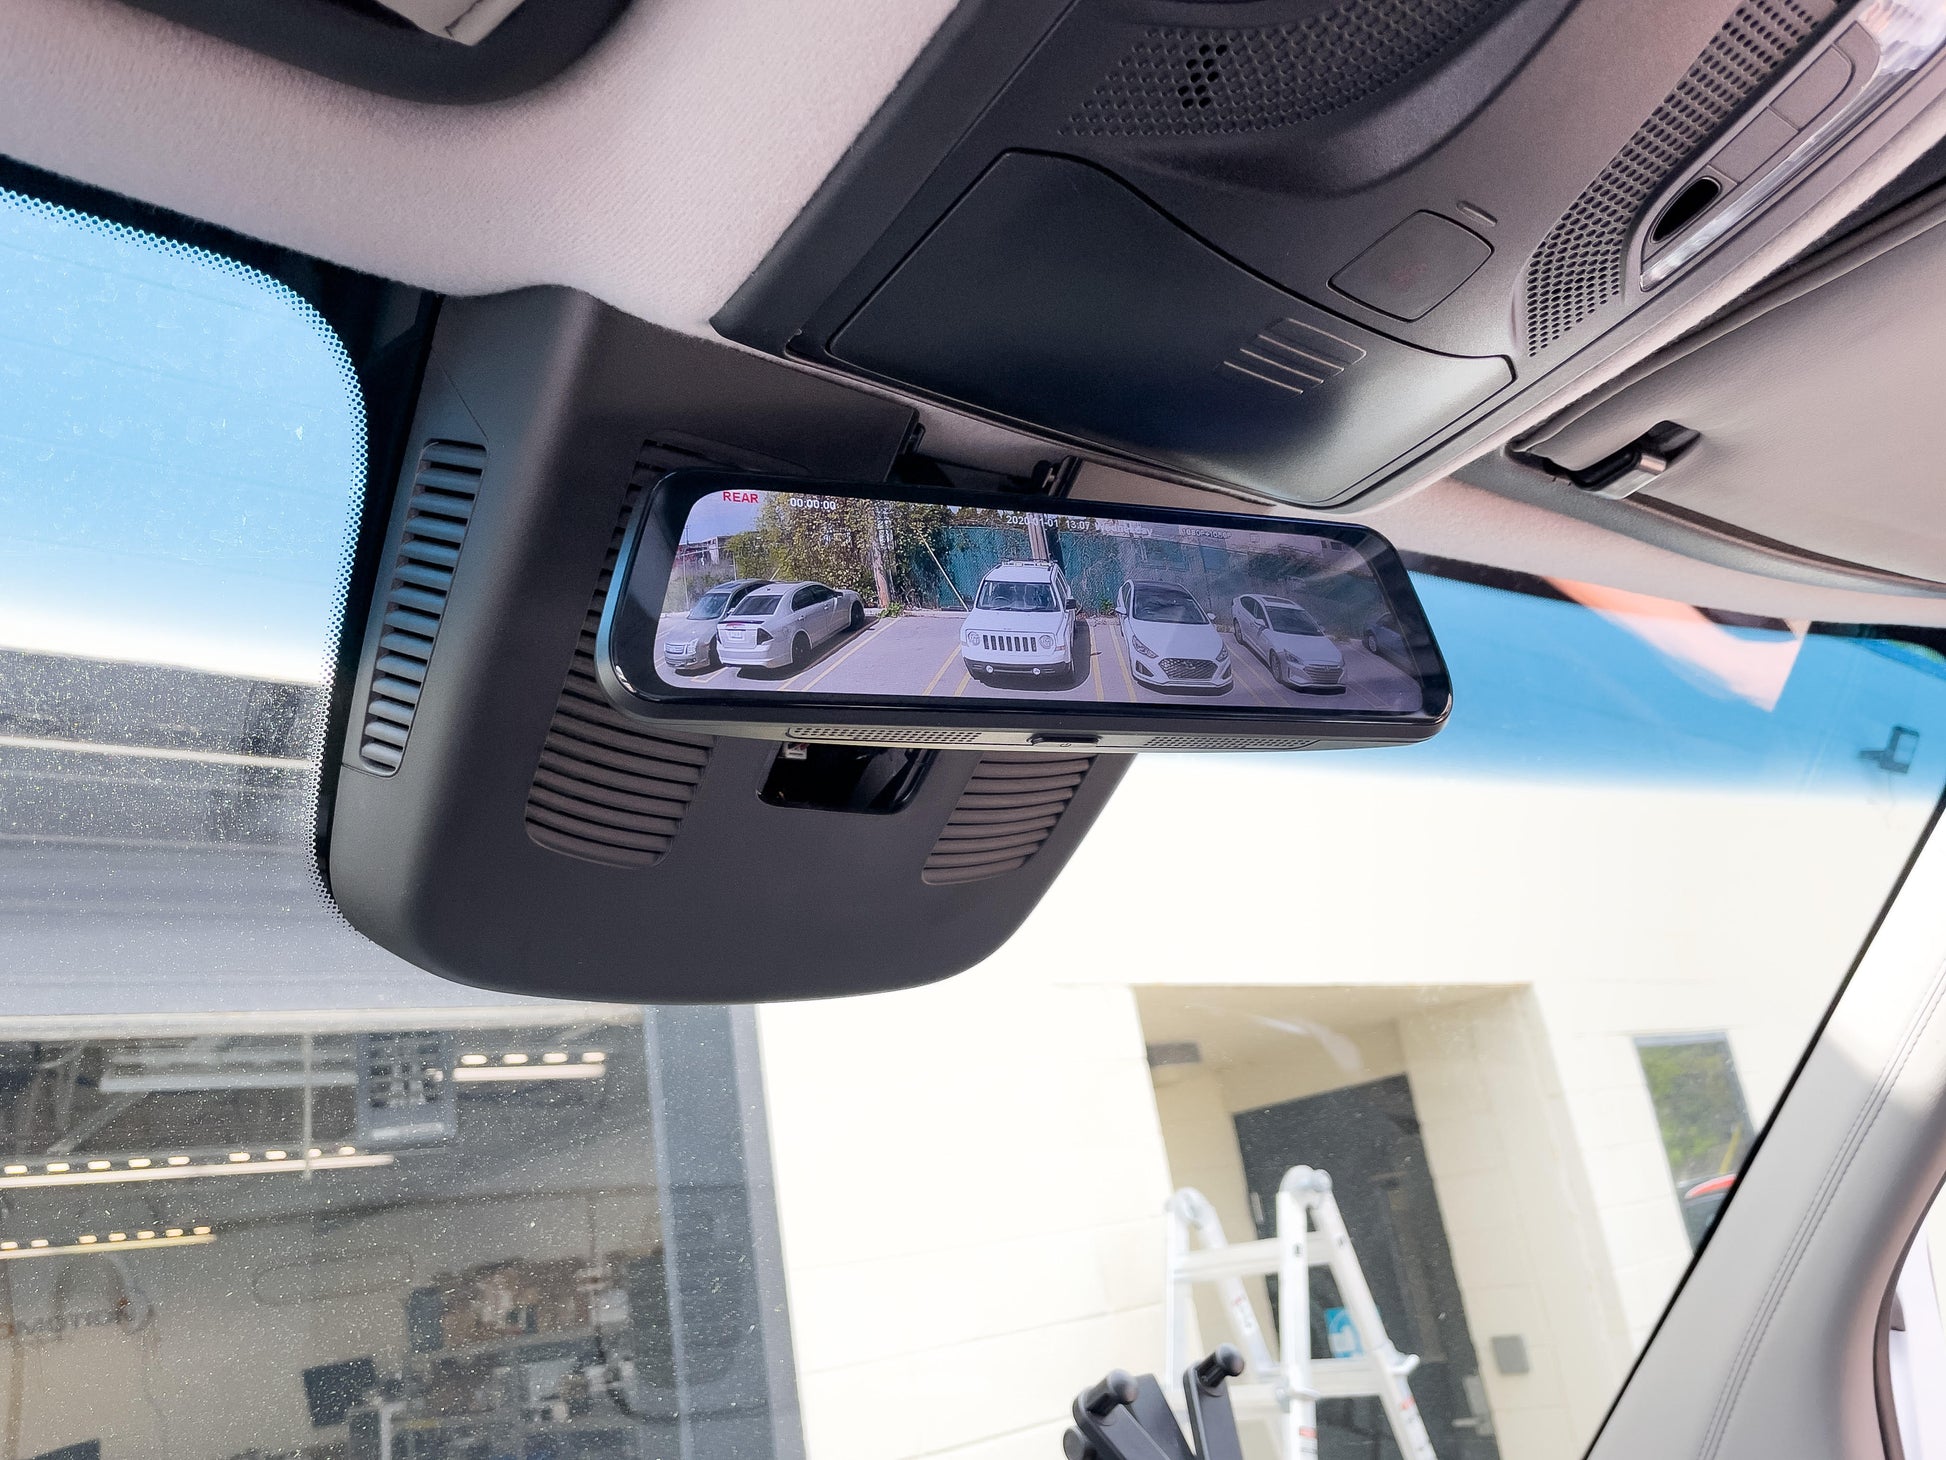 Fullview mirror installed in a van